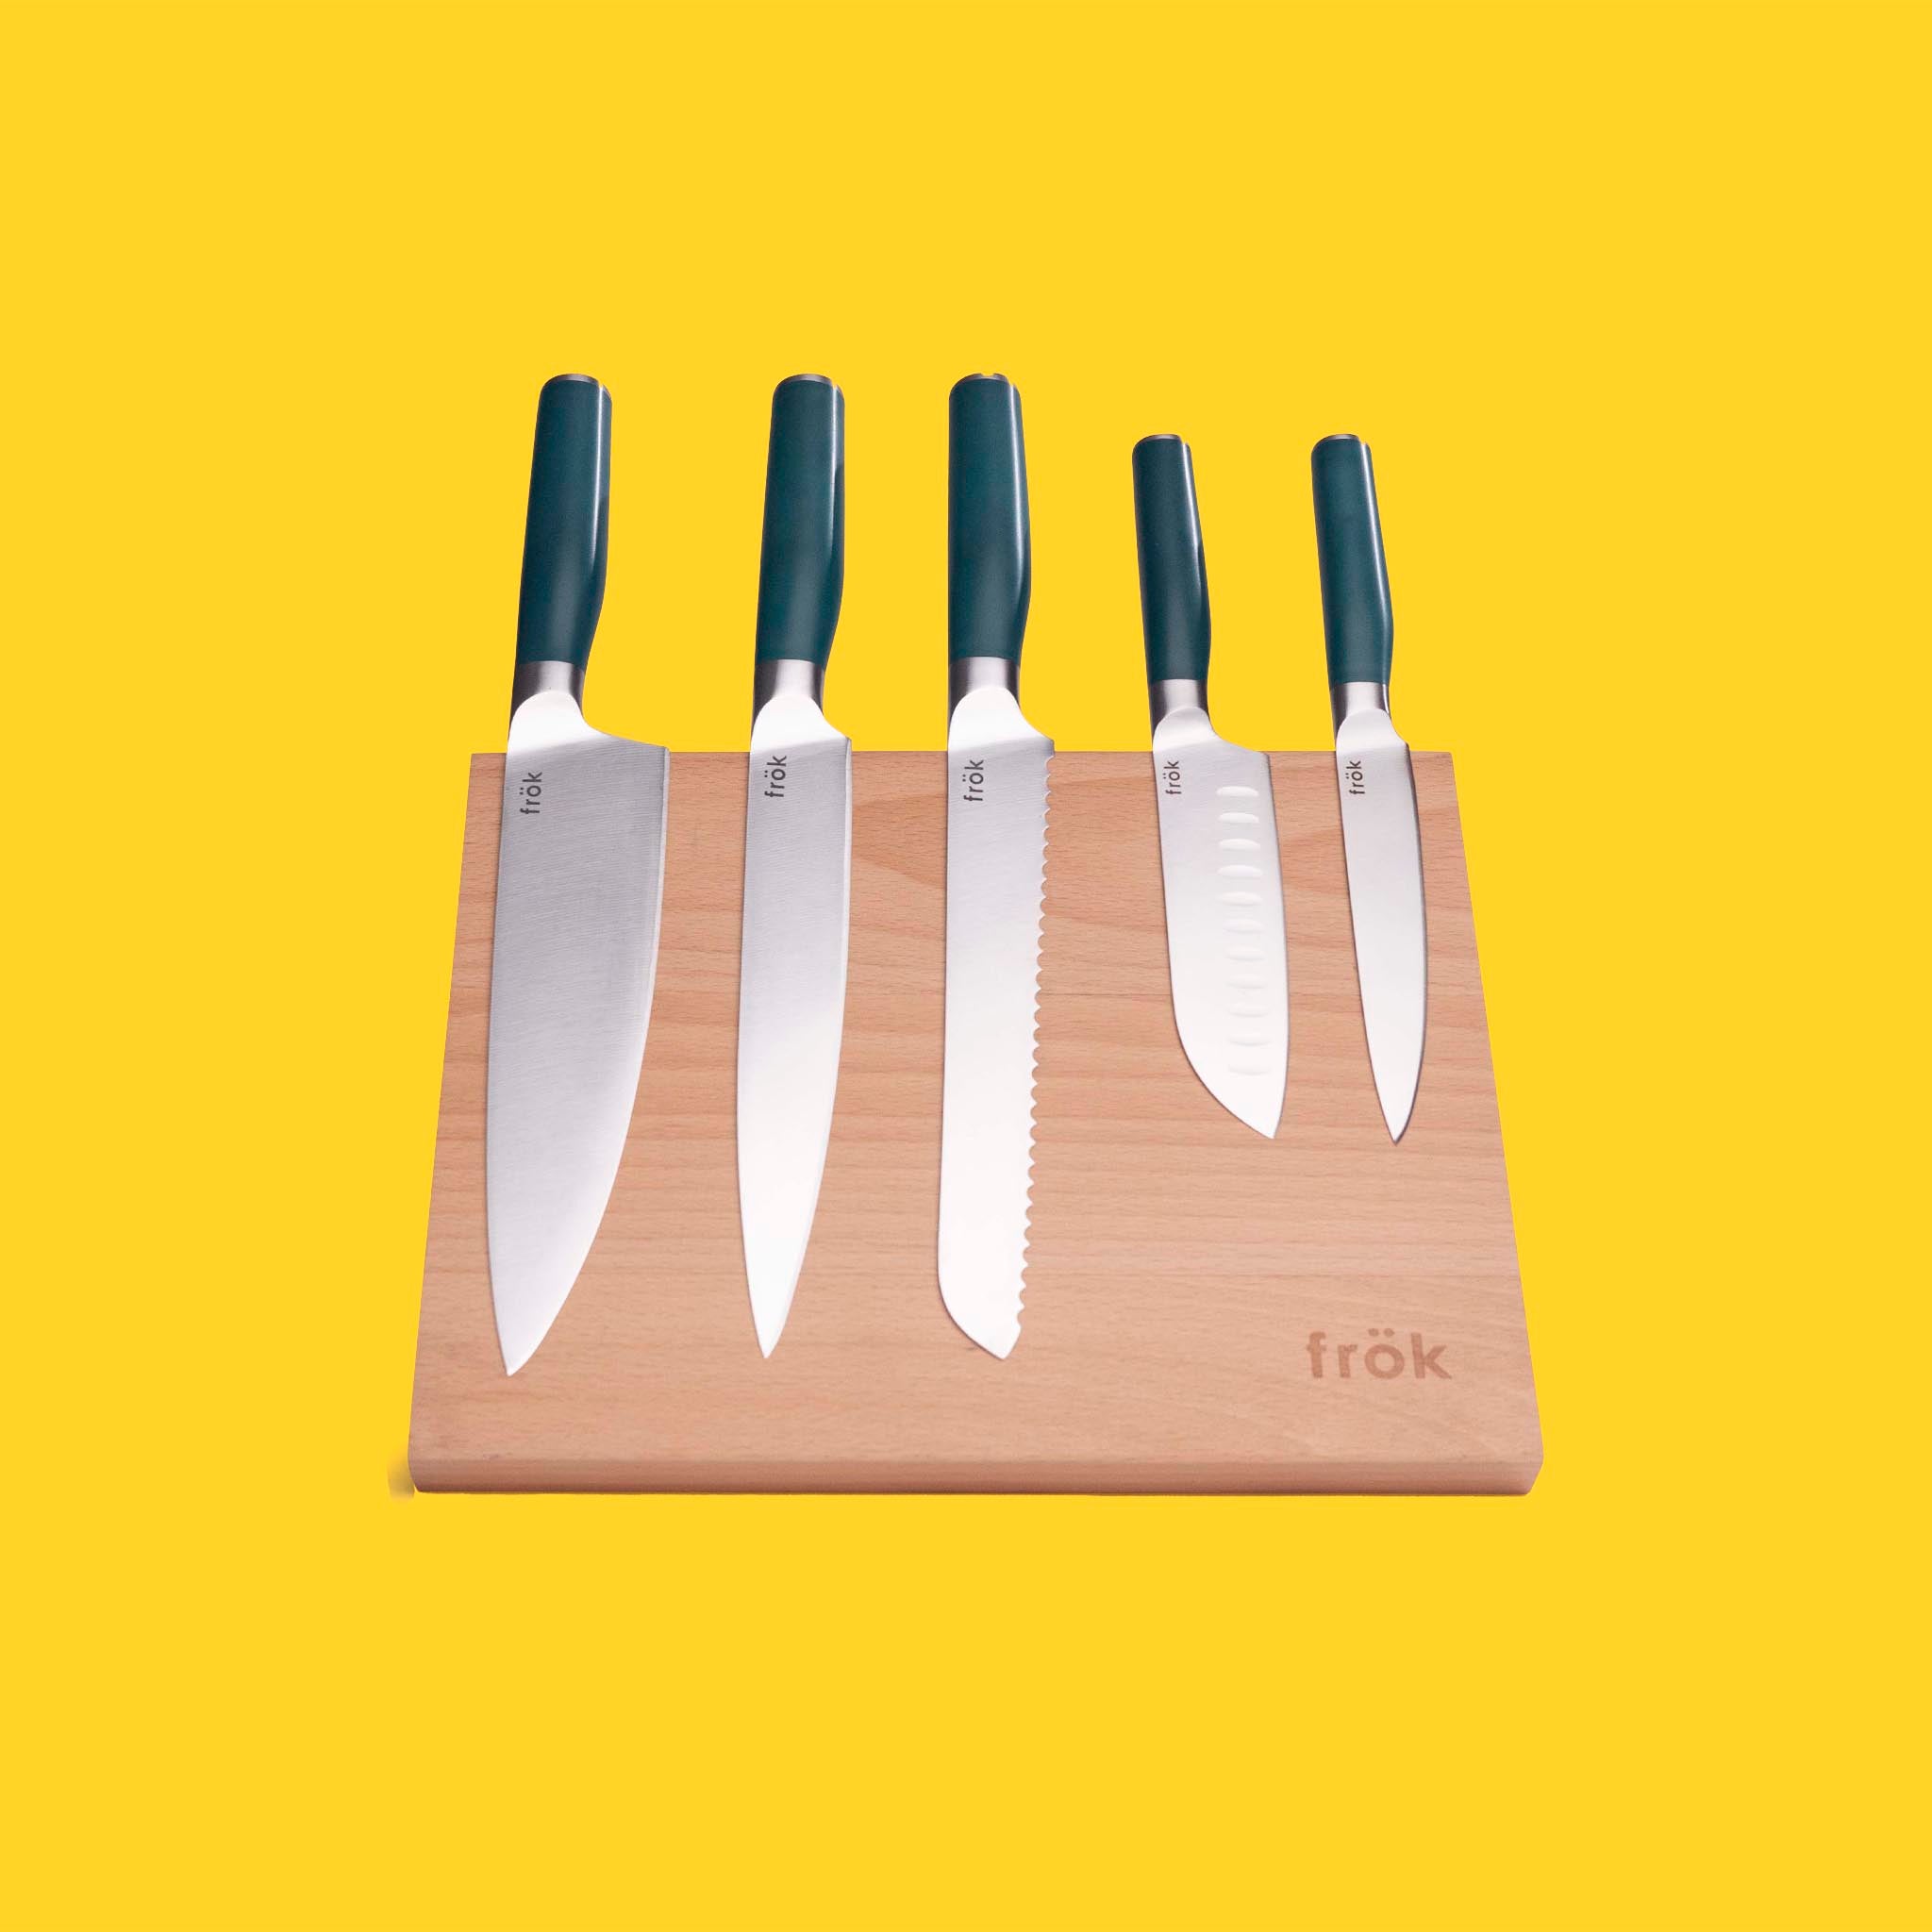 6 Piece Knife Set – frök